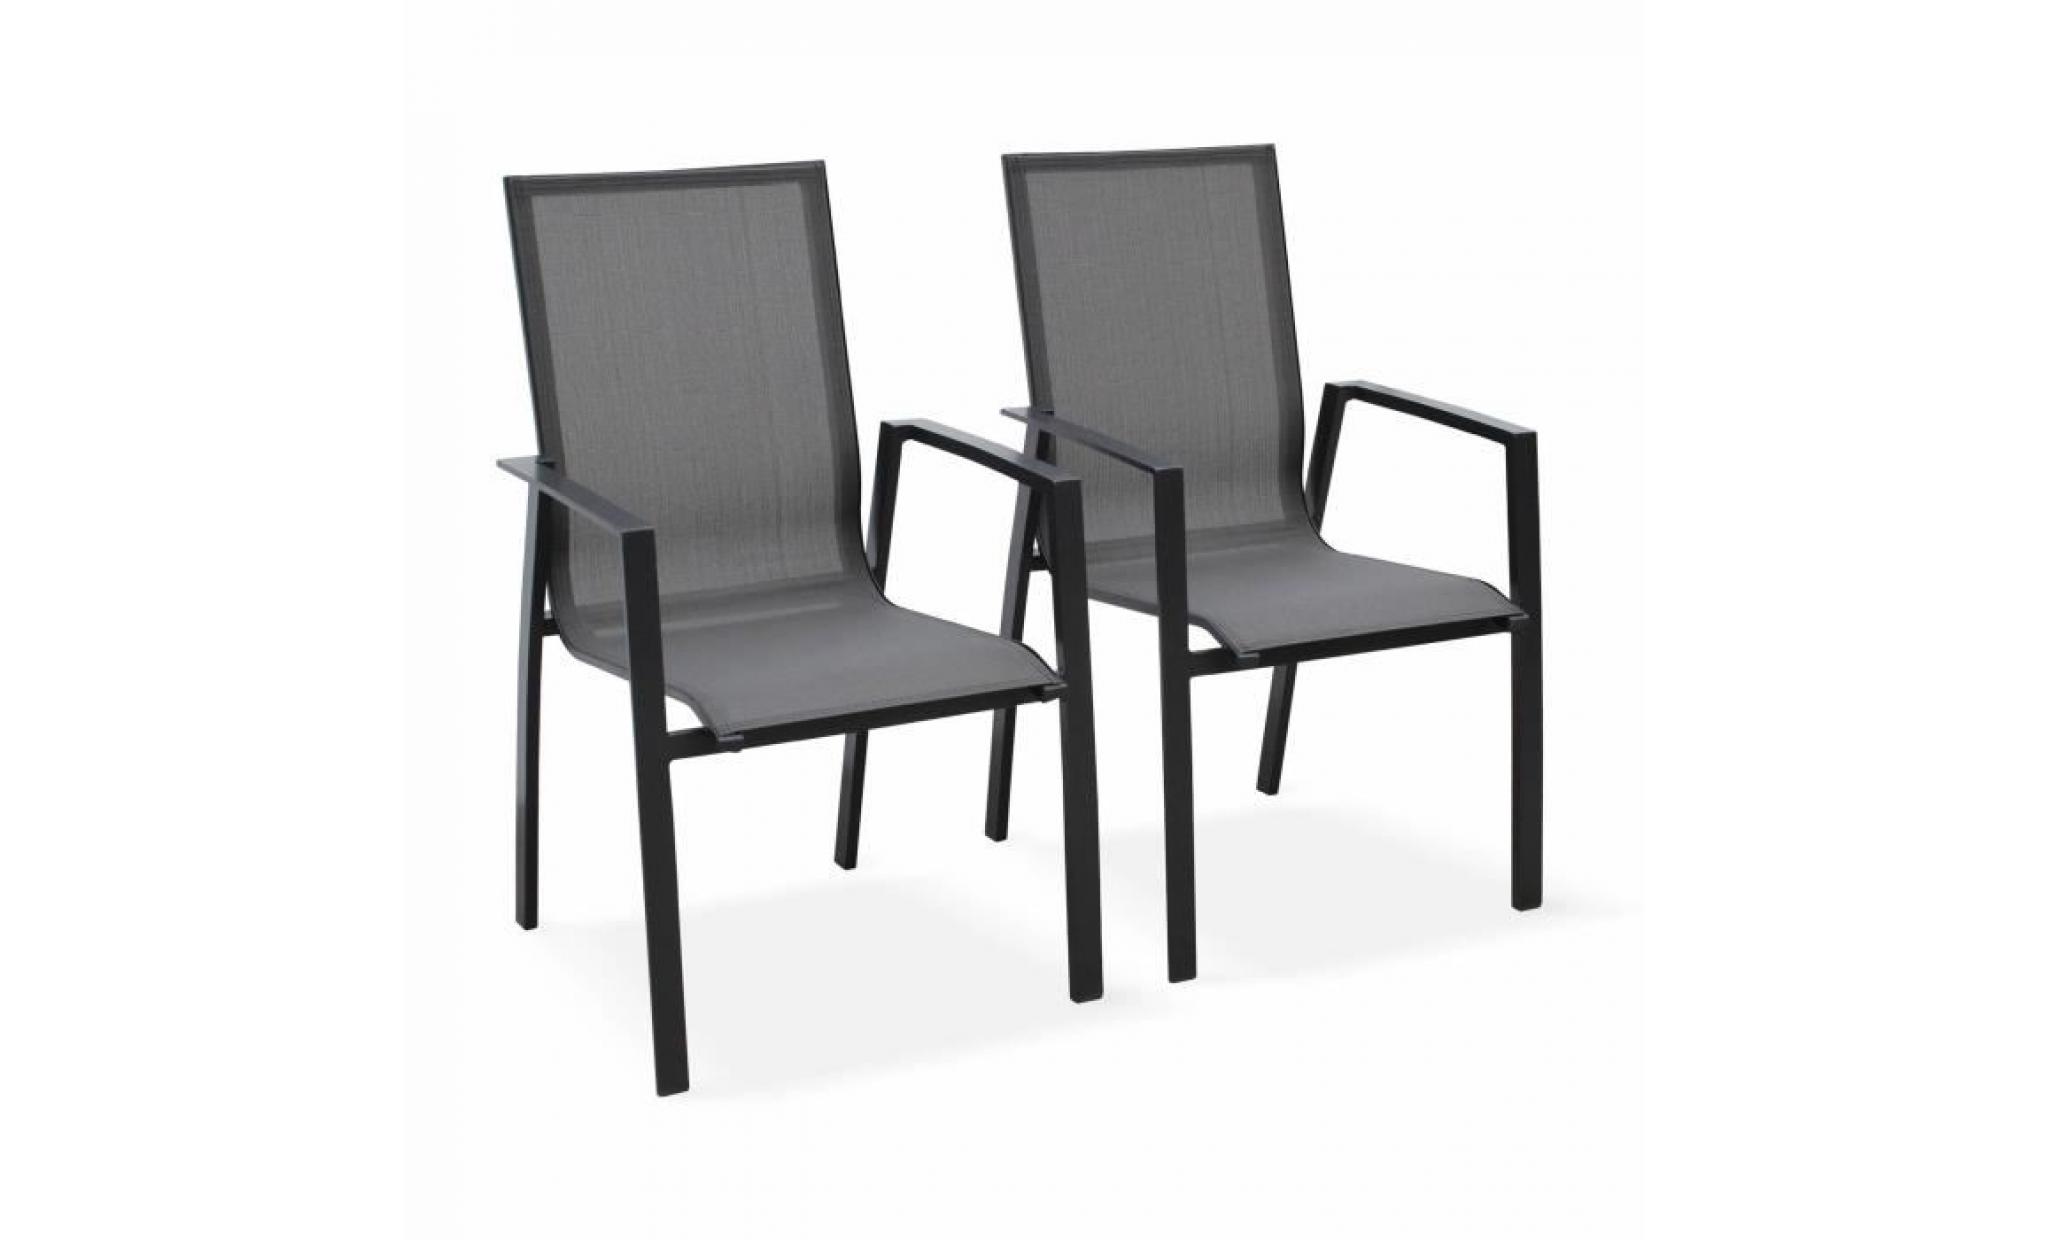 lot de 2 fauteuils   washington anthracite   en aluminium anthracite et textilène gris foncé, empilables